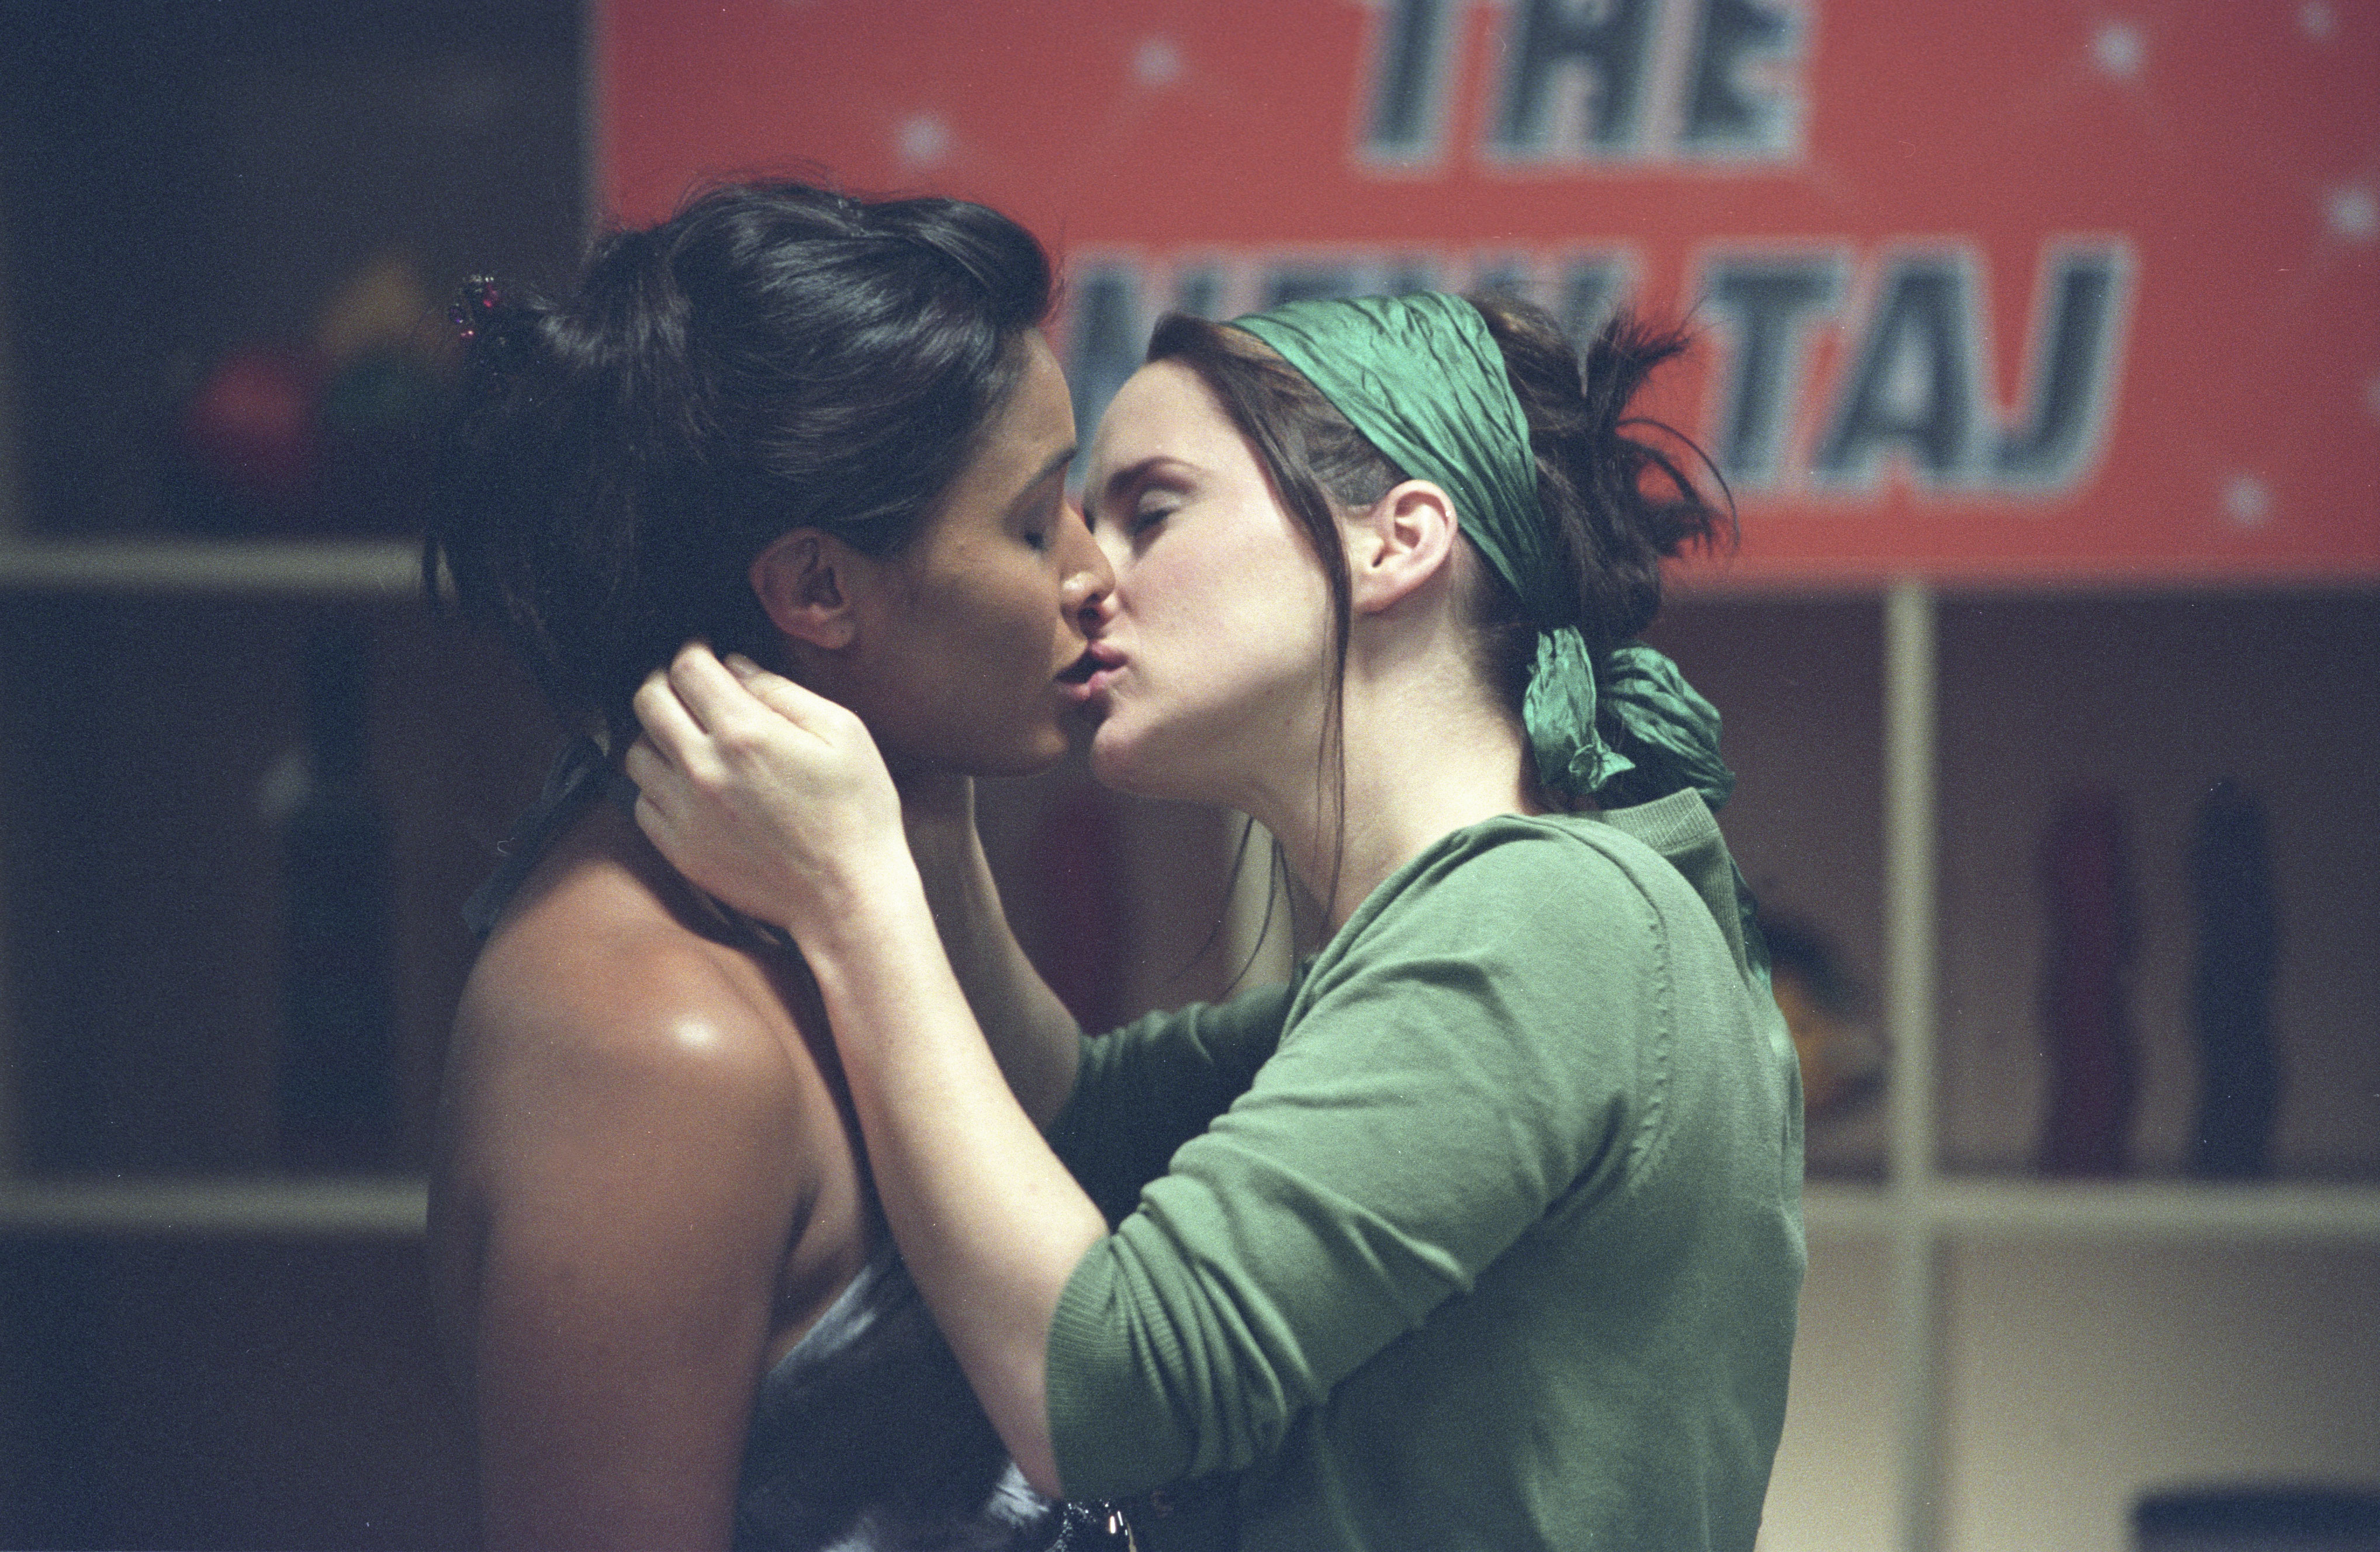 Laura fraser lesbians kisses